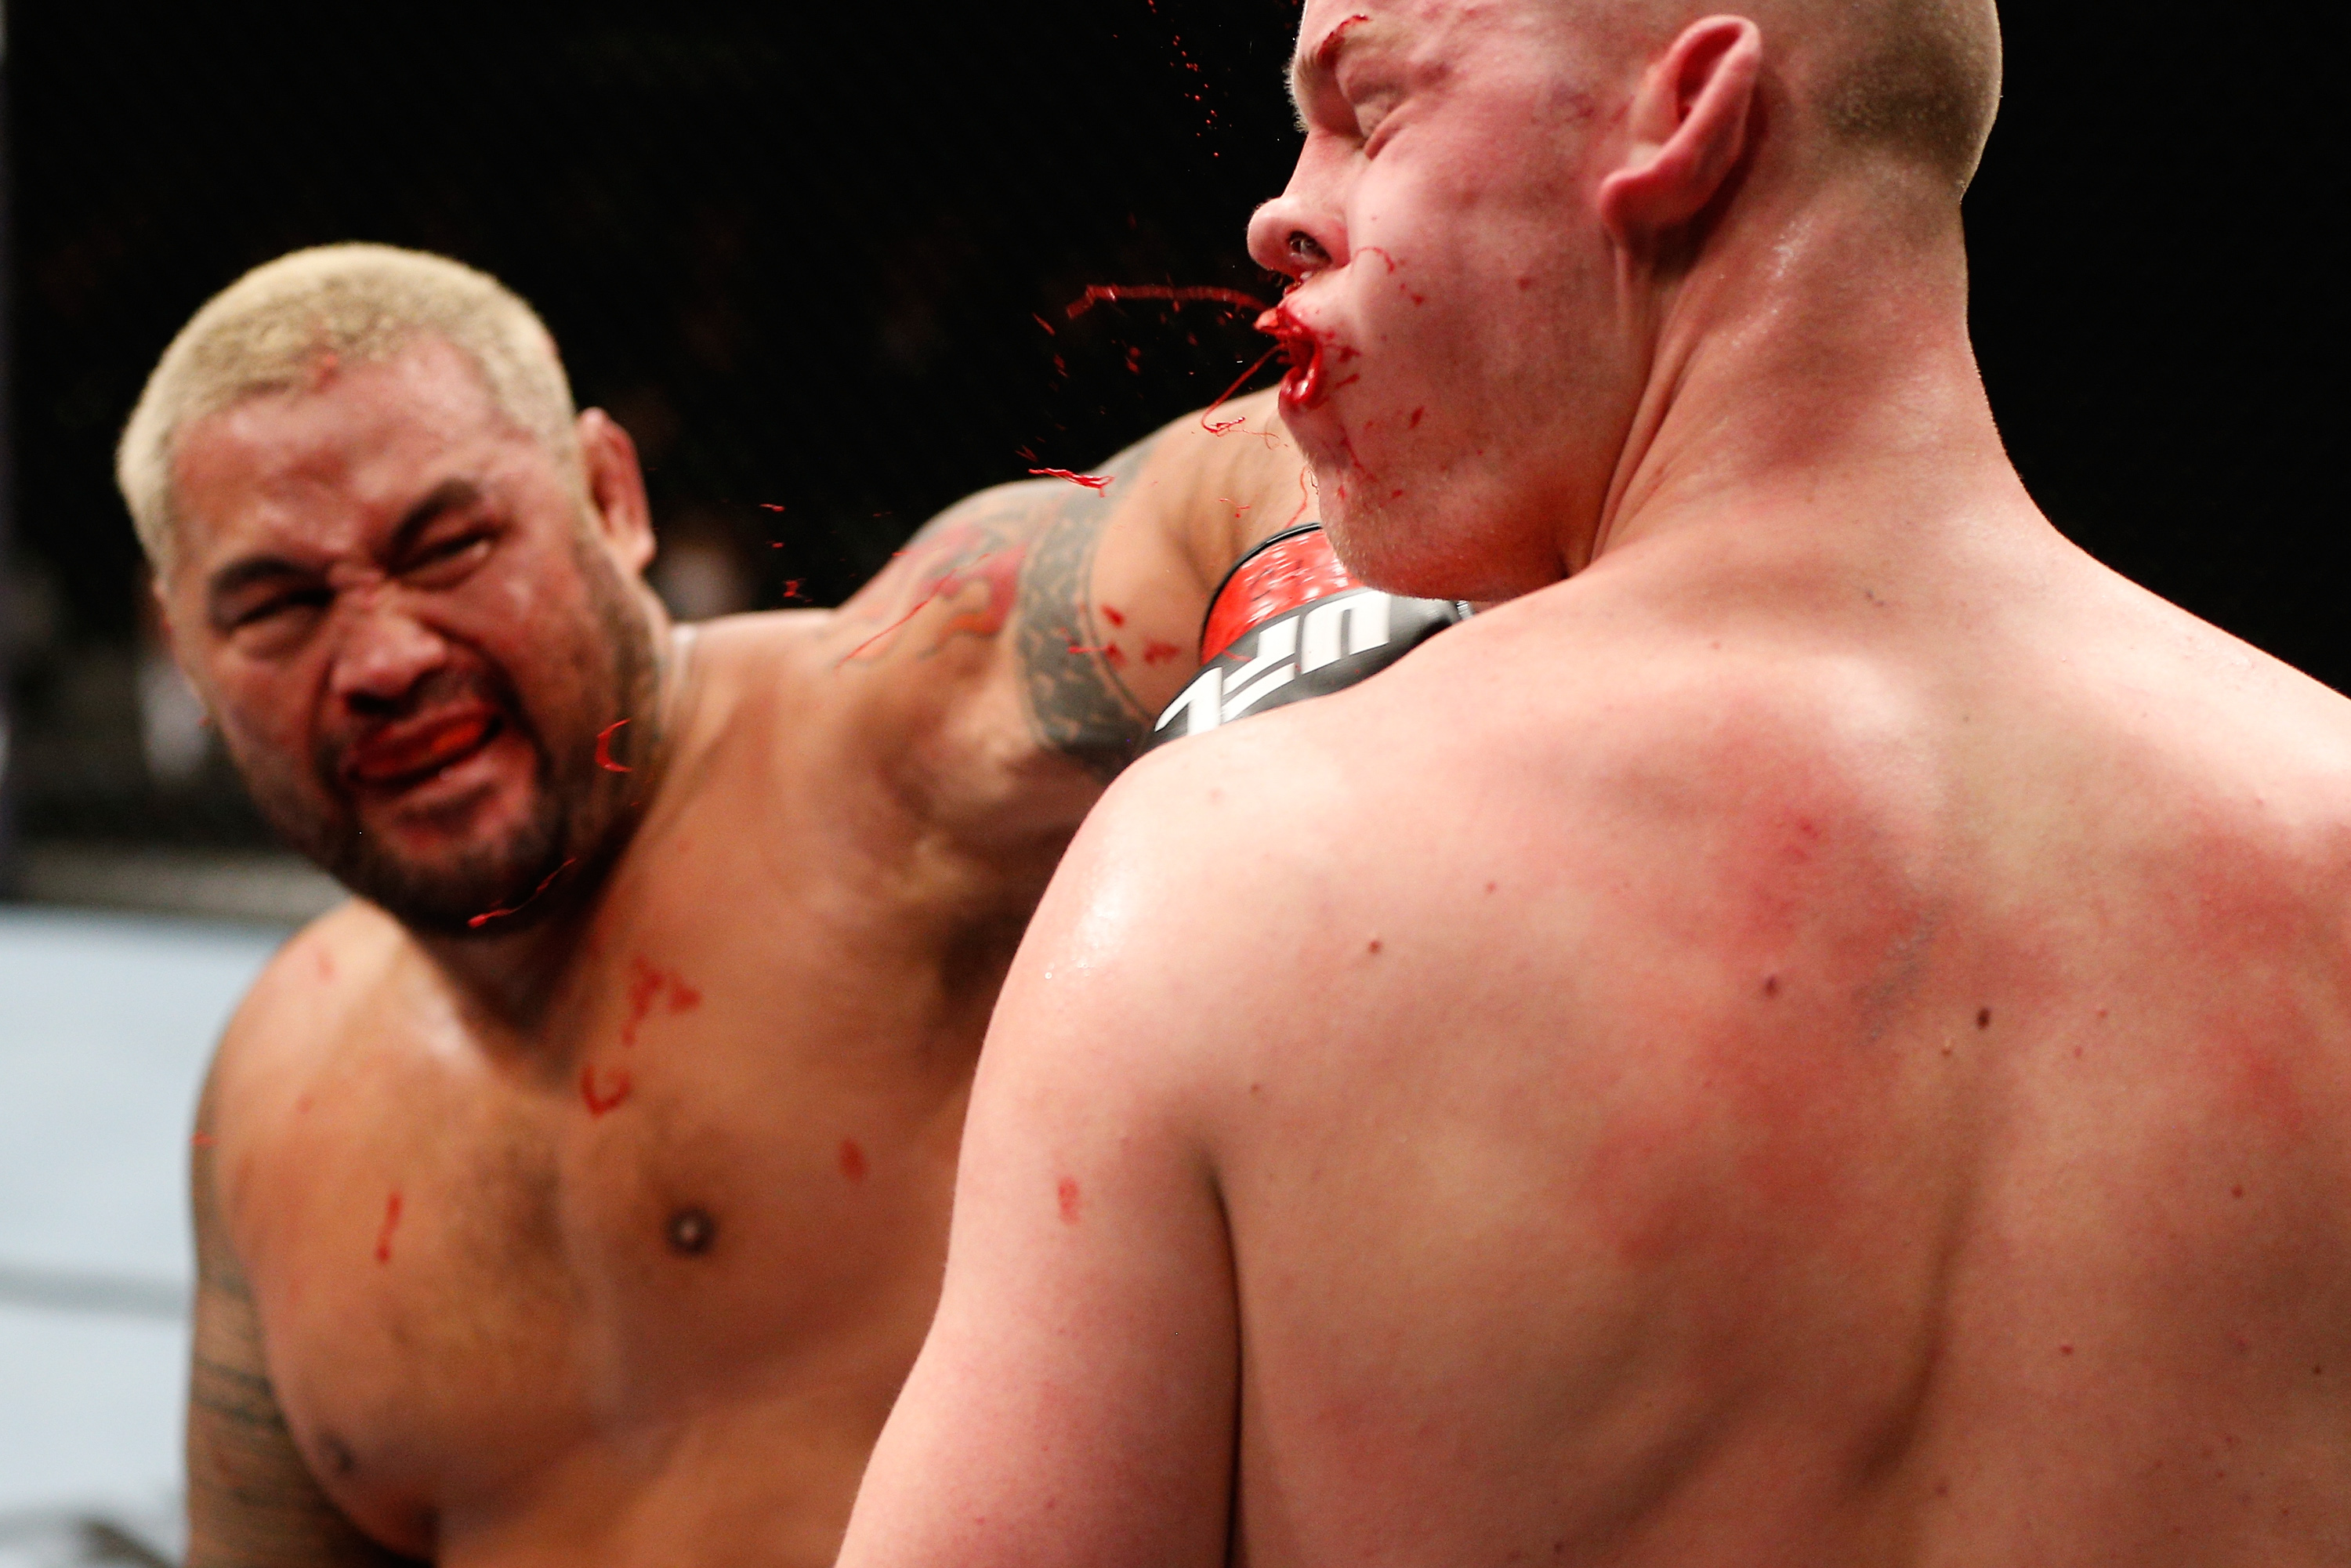 Mark Hunt kiüti Stefan Struve-ot a UFC on Fuel TV 8-on. Ennél keményebb KO-fotó nem létezik, maximum vele egyenértékű. Itt tört el Struve állkapcsa. Hedges egyik legnépszerűbb képe.